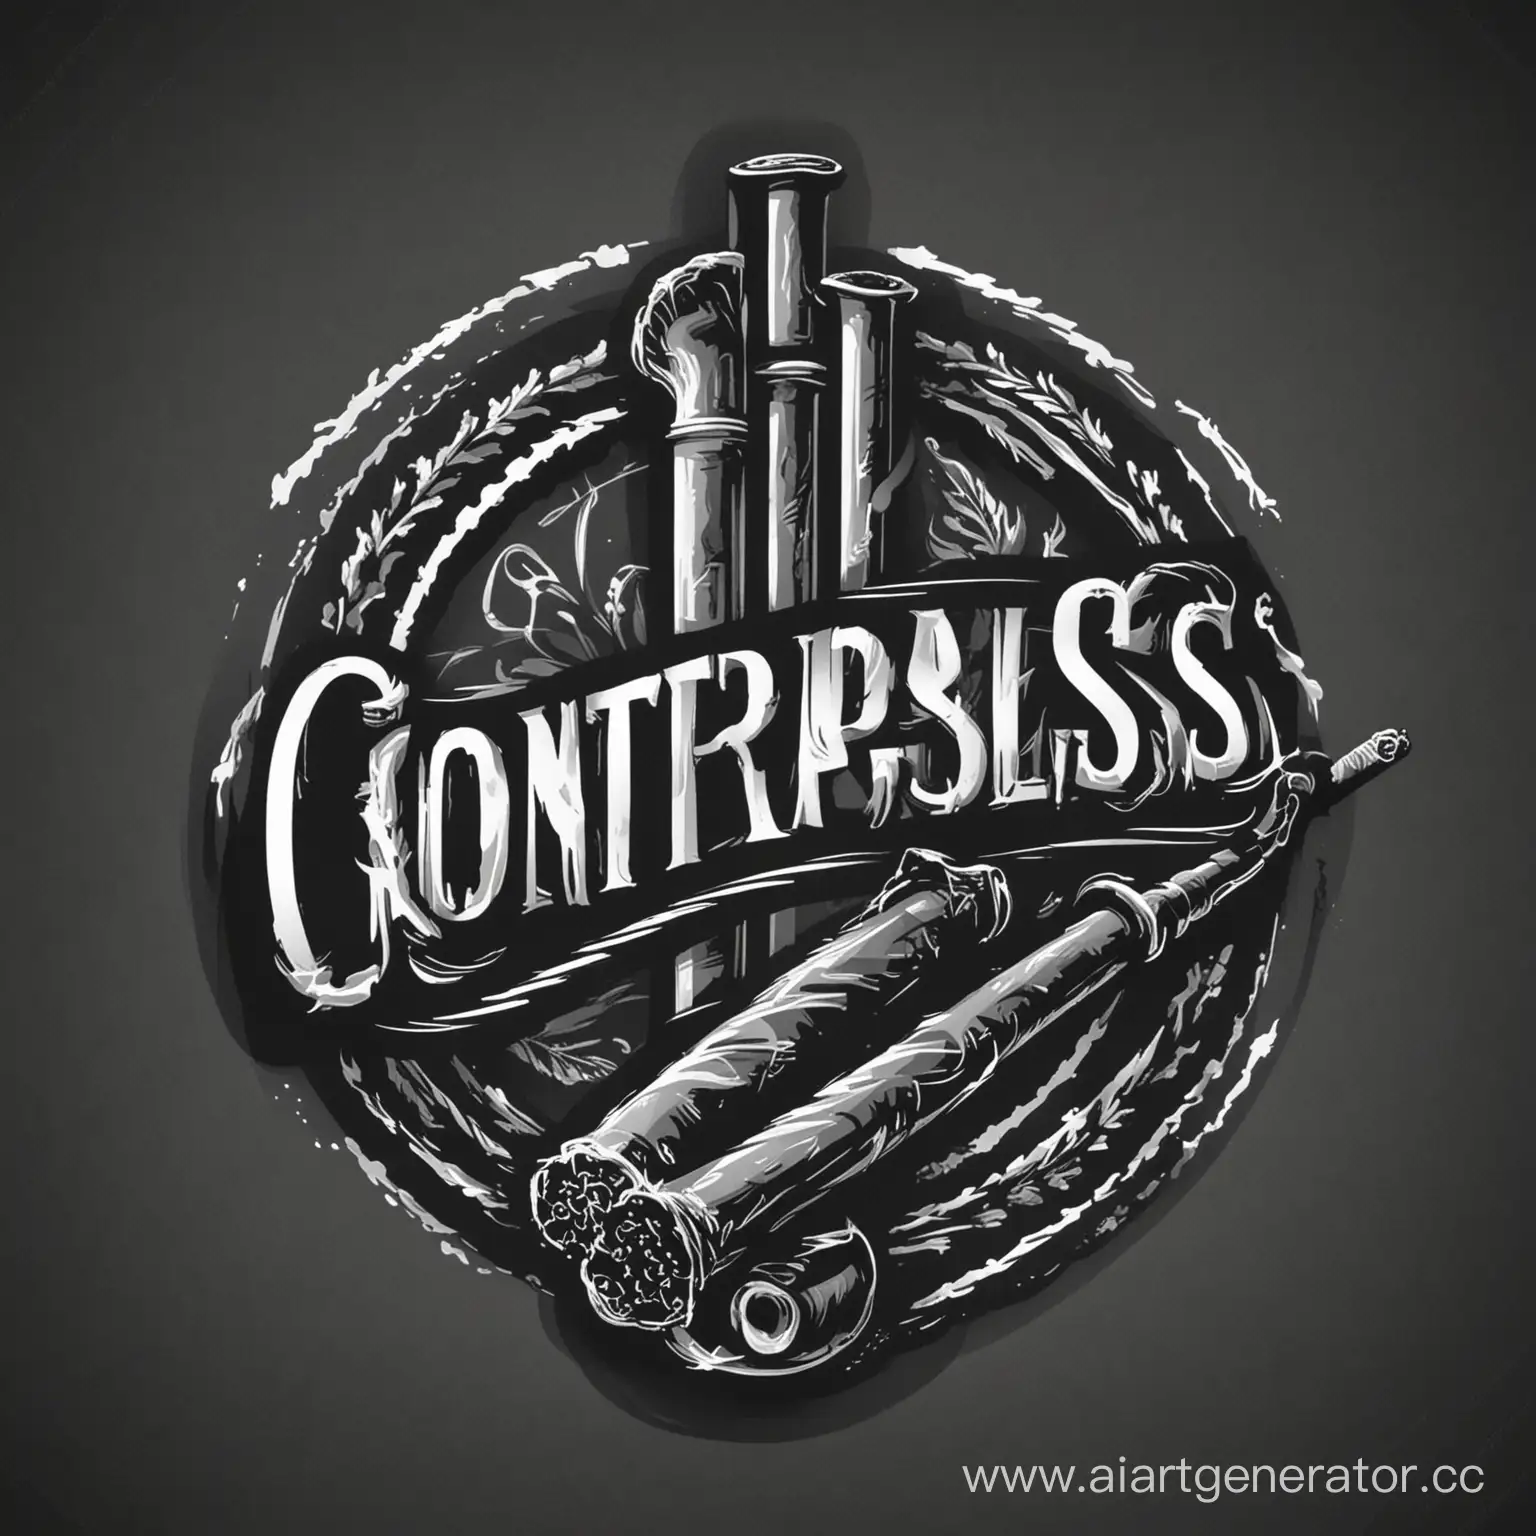 Векторное однотонное изображение, логотип магазина сигарет с названием "Контрабас".